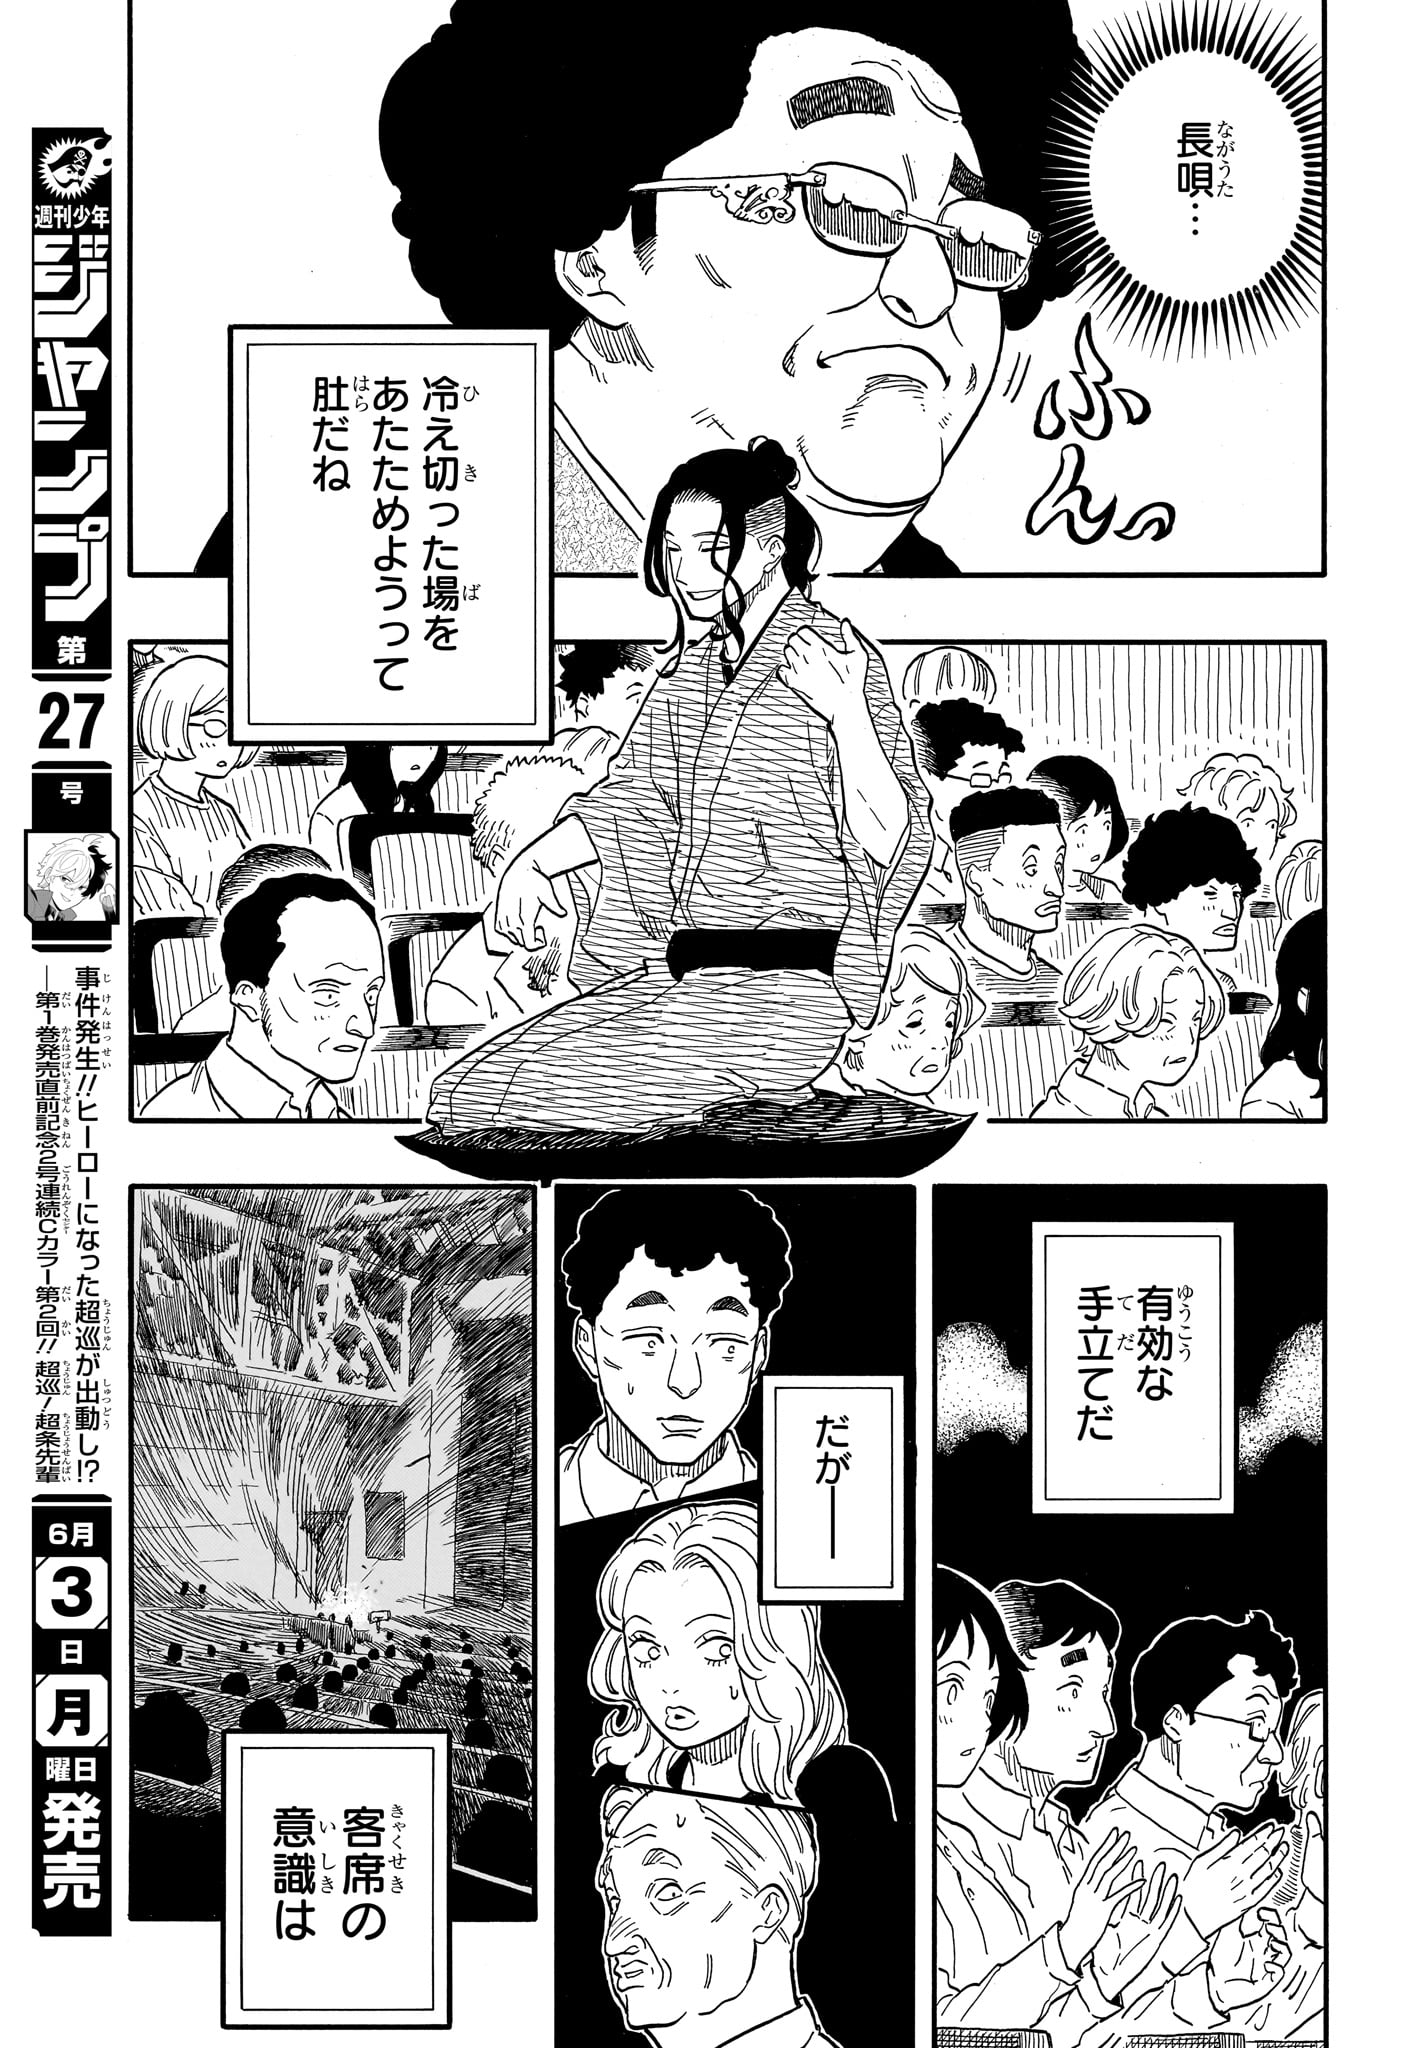 Akane-Banashi - Chapter 111 - Page 7